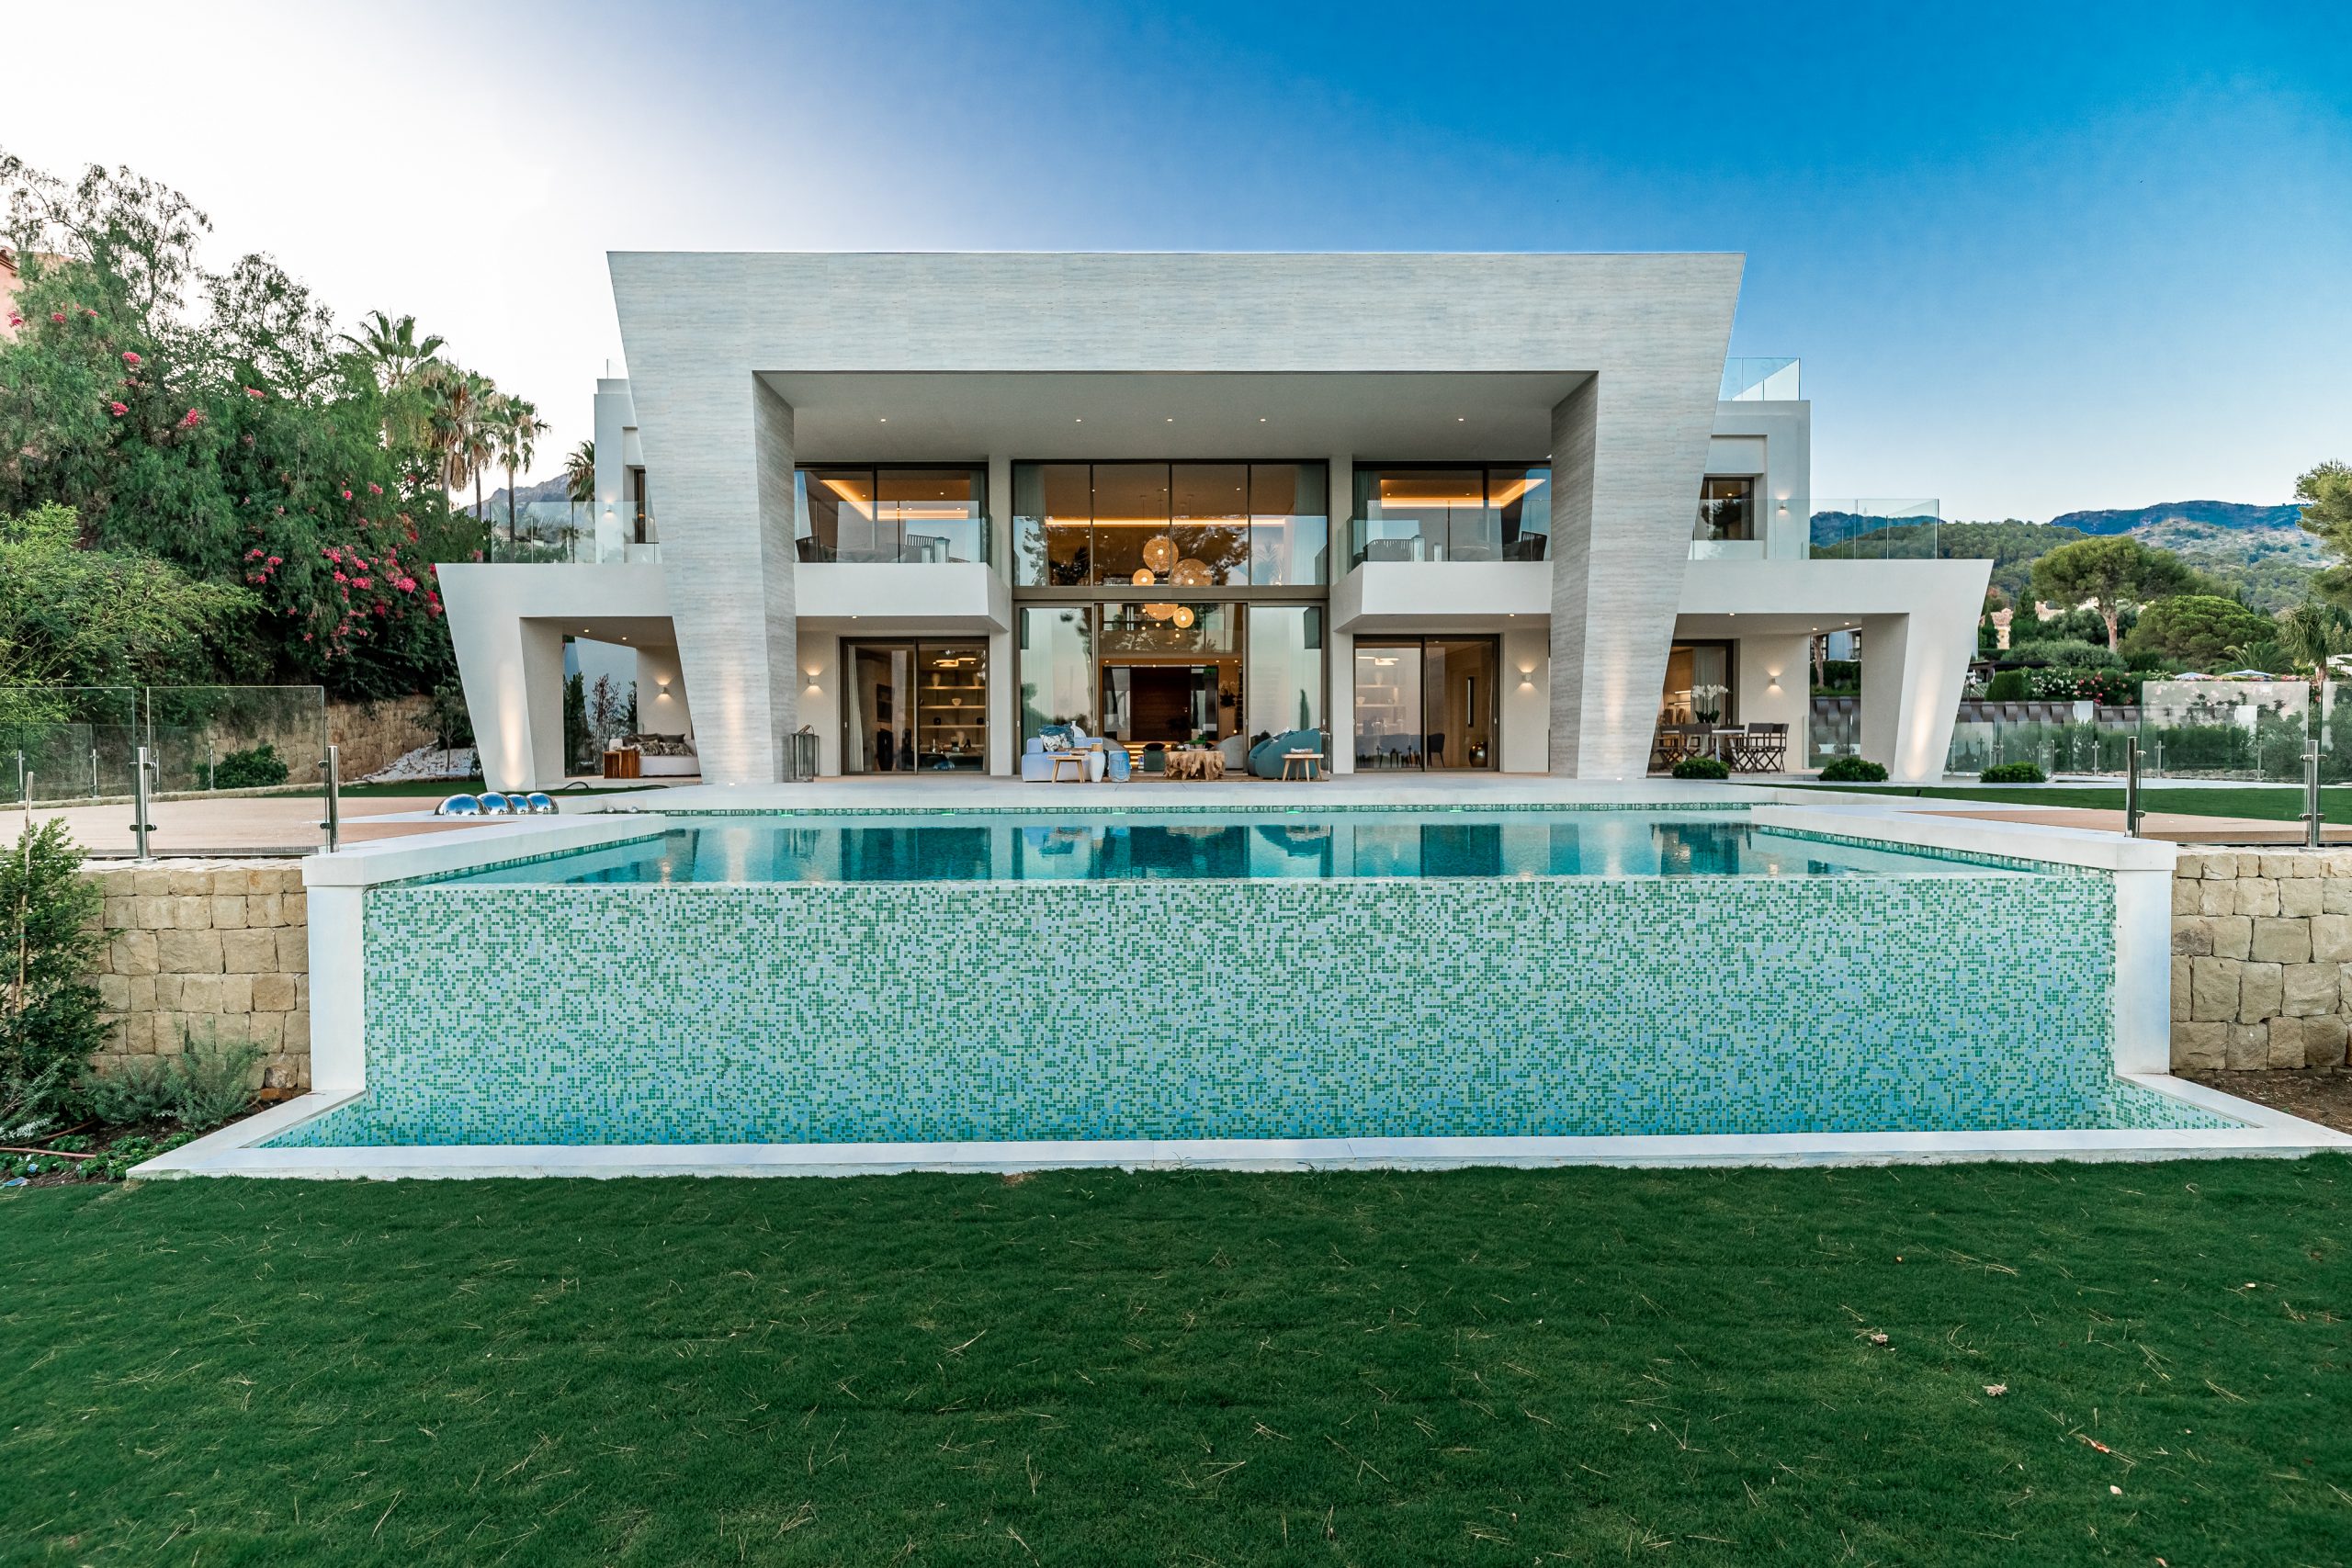 Villa Los Ángeles - Un hogar inteligente. Esta casa contemporánea redefine el verdadero lujo en Marbella ofreciendo un diseño excepcional en una ubicación privilegiada.